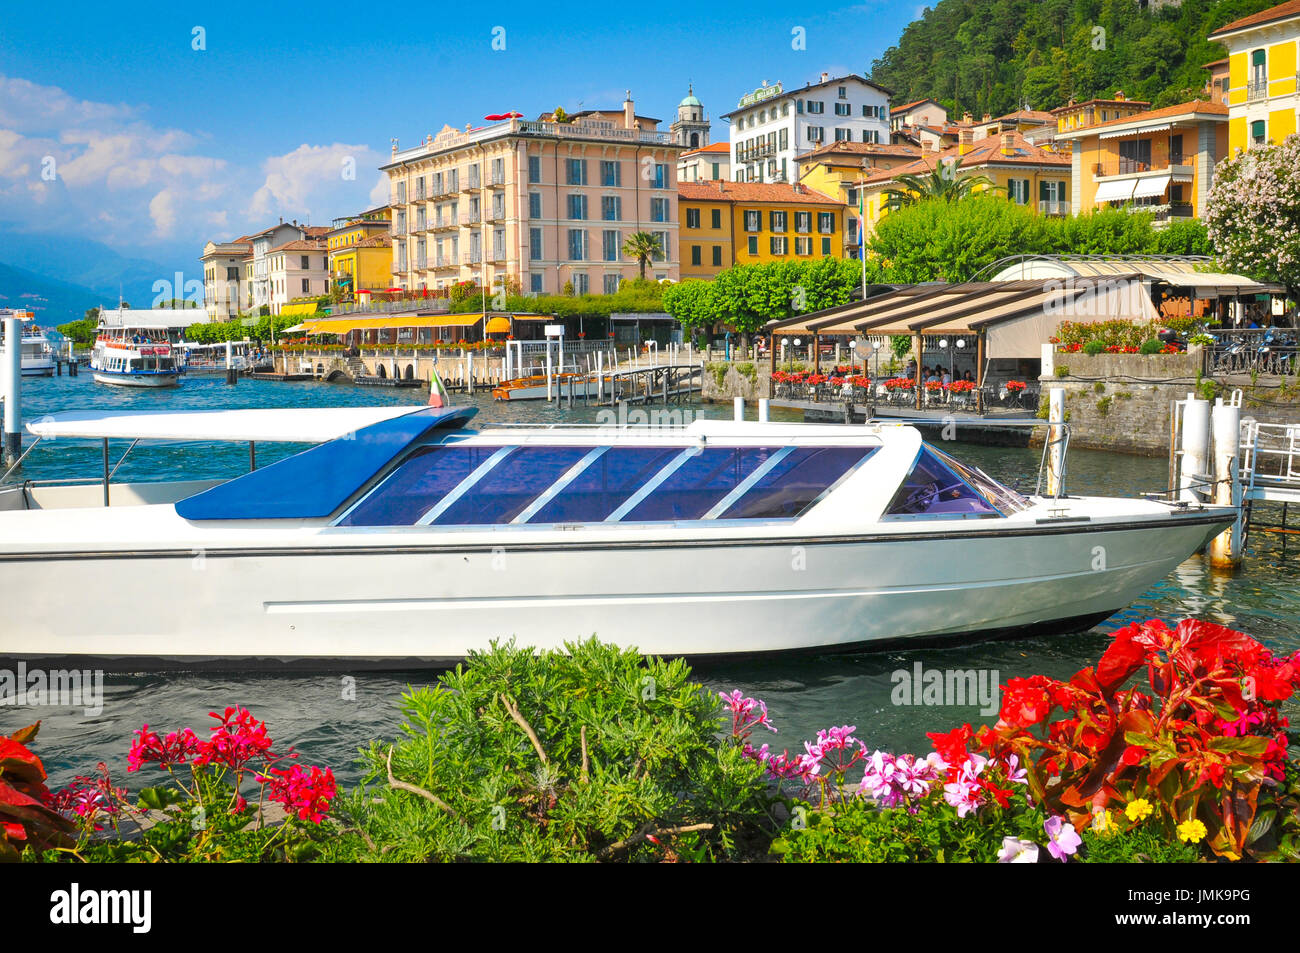 Bellagio, Italia - 29 Giugno 2016: Panorama del centro storico di Bellagio, famoso resort in riva al lago di Como in Lombardia, Italia Foto Stock